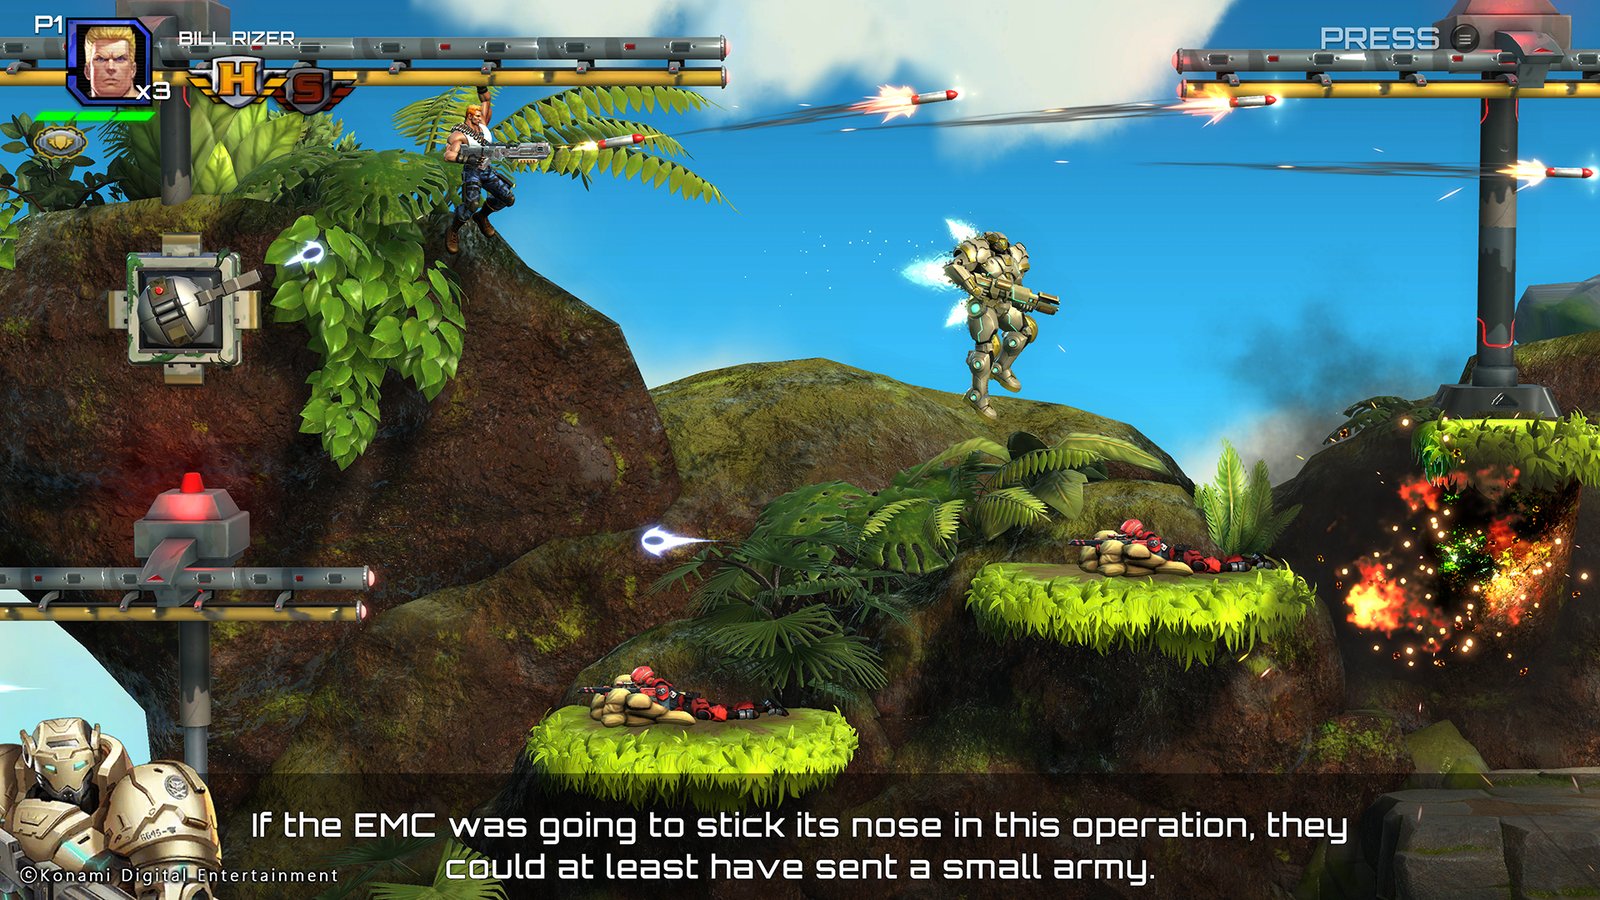 Operasi Galuga Game Arcade Run-and-Gun Nostalgia dengan Ruang untuk Peningkatan